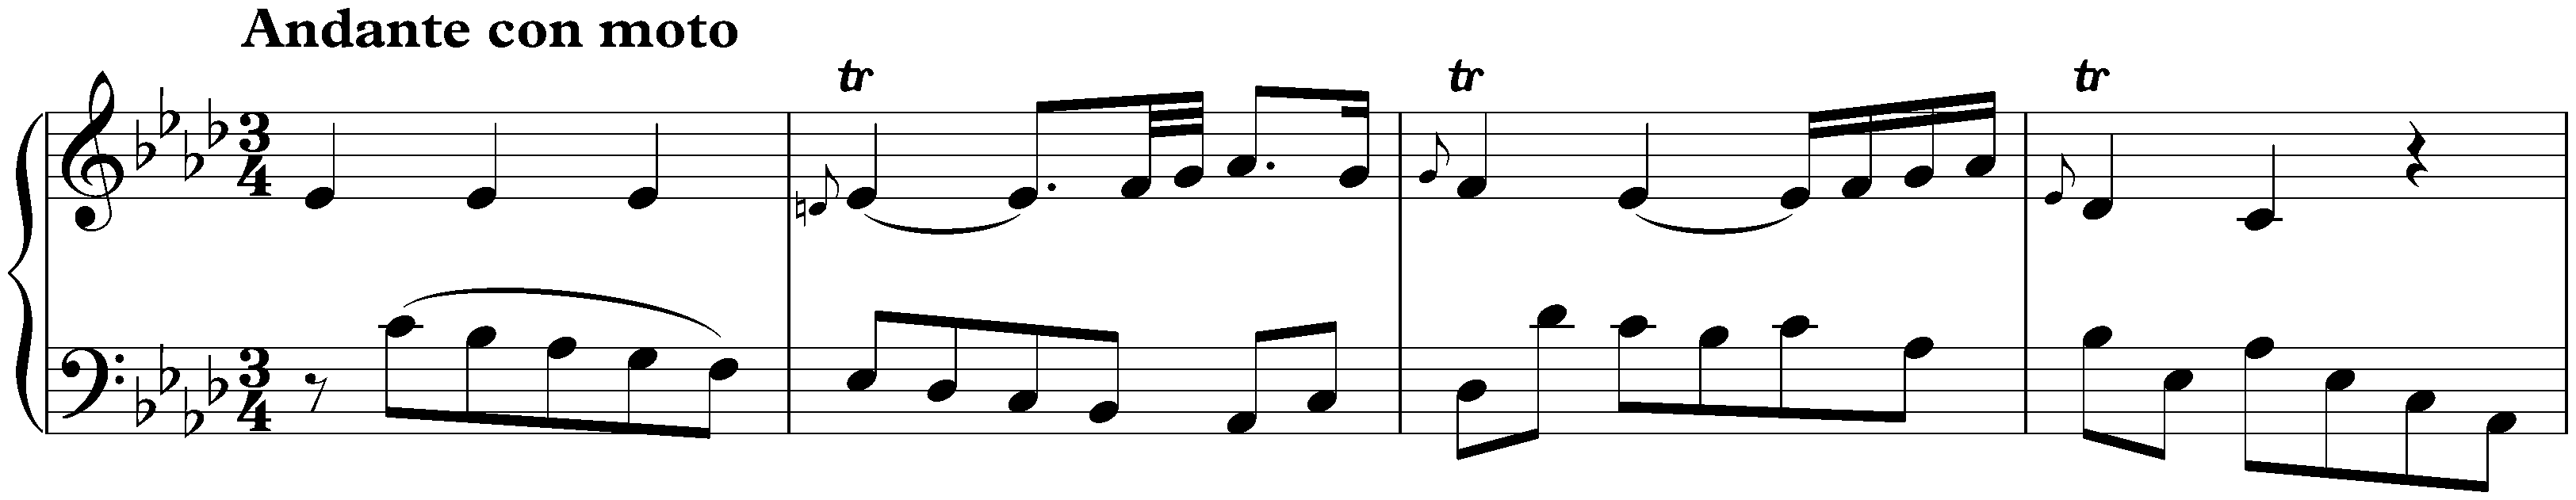 Sonata in C minor, Hob. XVI:20; 2. Andante con moto